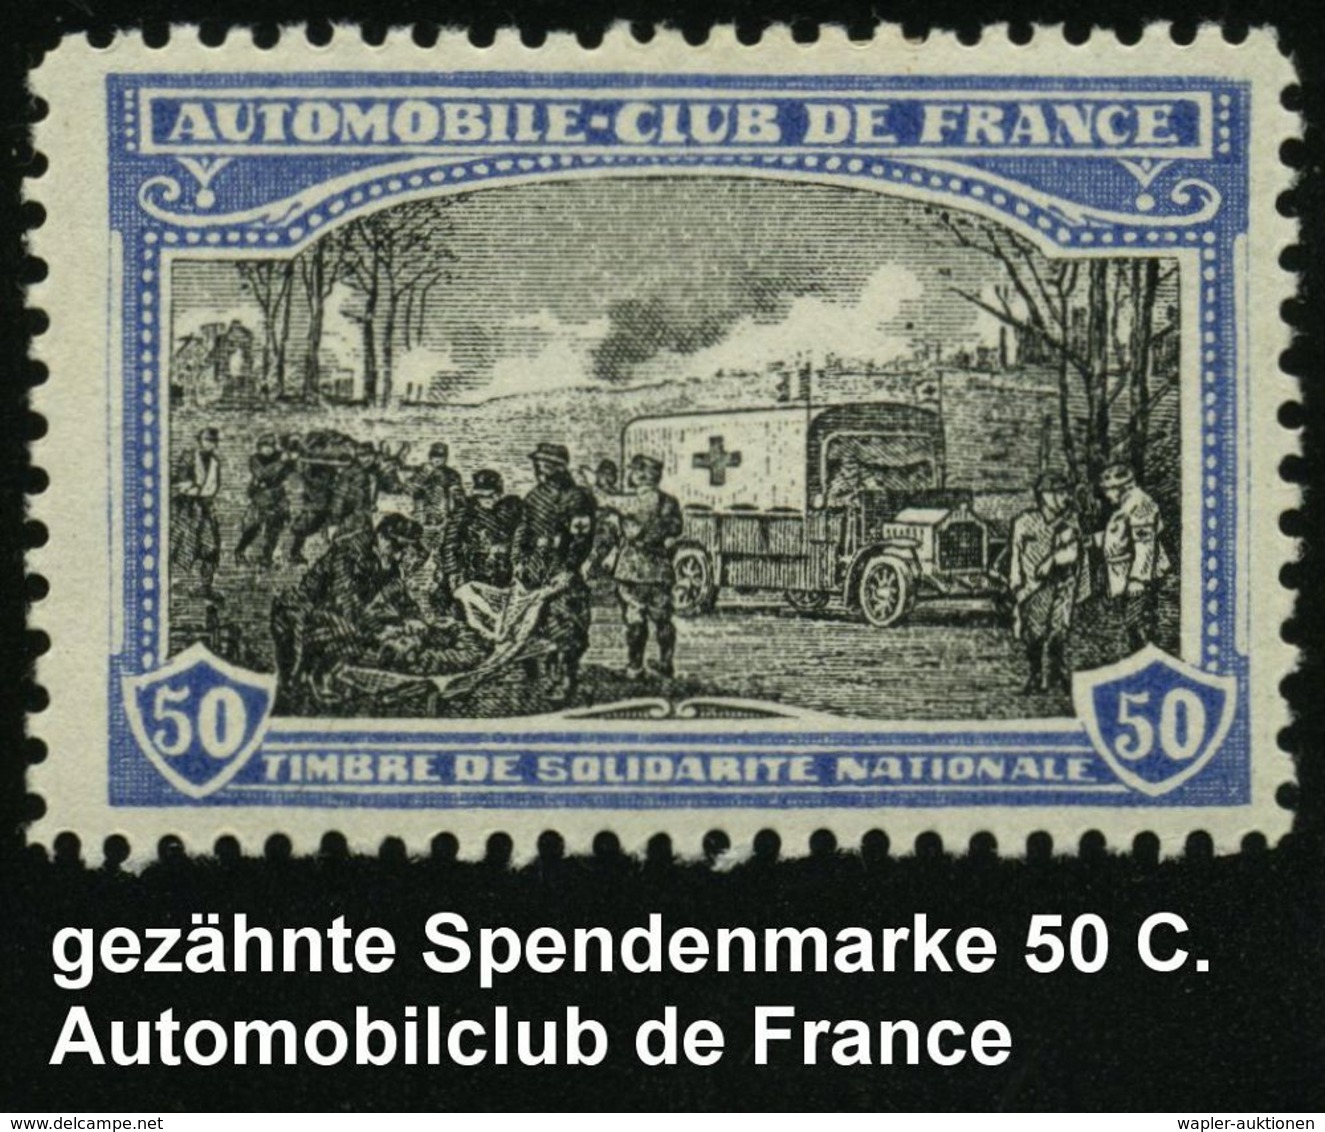 KRAFTFAHR-TRUPPEN / MILITÄR-KFZ. (ohne PANZER) : FRANKREICH 1914 50 C. Rotkreuz-Spendenmarken "AUTOMOBILE-CLUB DE FRANCE - Autos